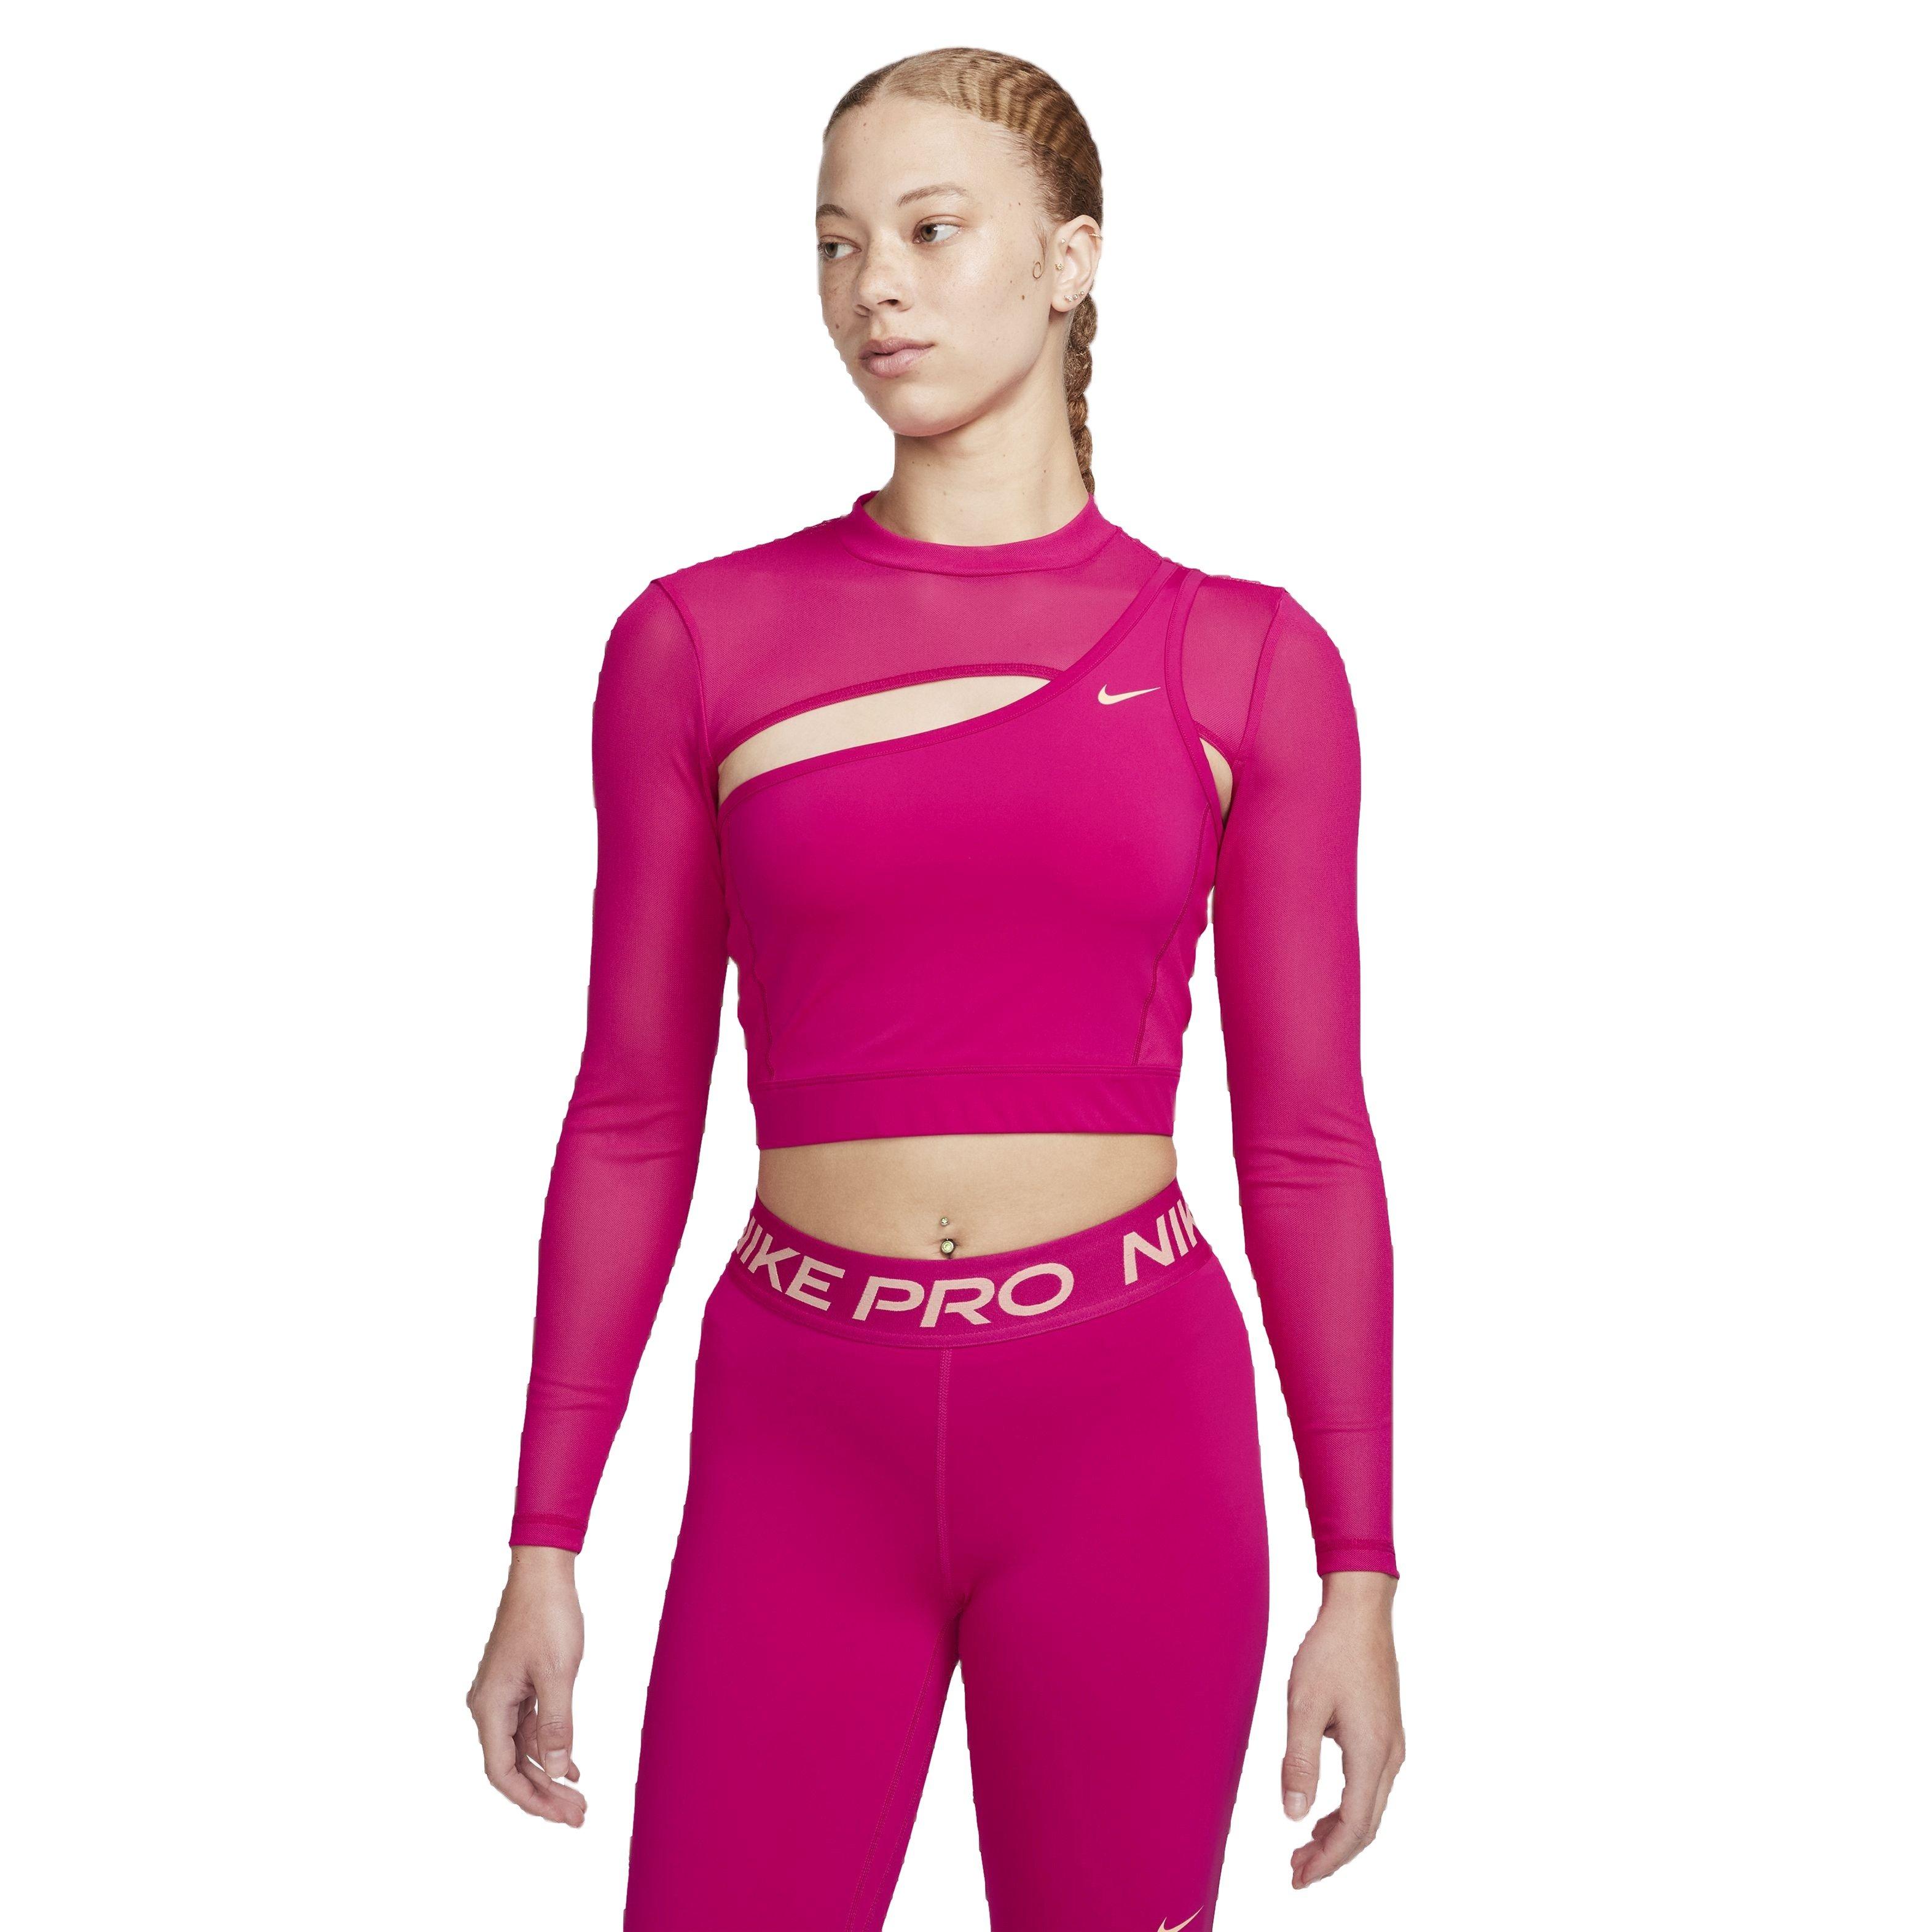 Nike Women's Pro​ Long-Sleeve Cropped Top - Hibbett